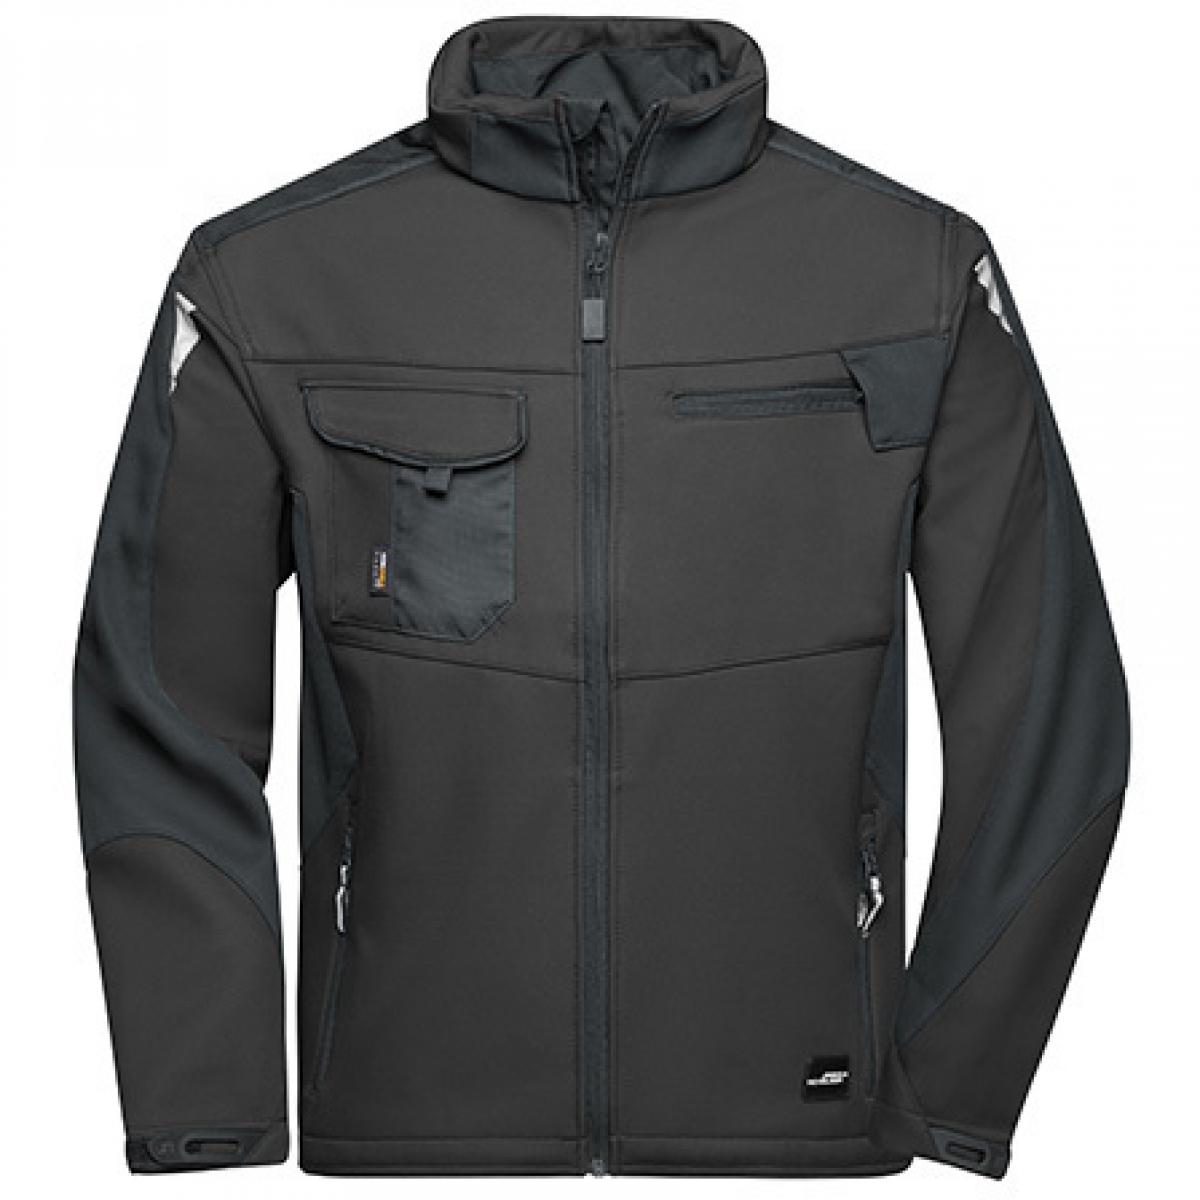 Hersteller: James+Nicholson Herstellernummer: JN844 Artikelbezeichnung: Herren Jacke, Workwear Softshell Jacket -STRONG- Farbe: Black/Black